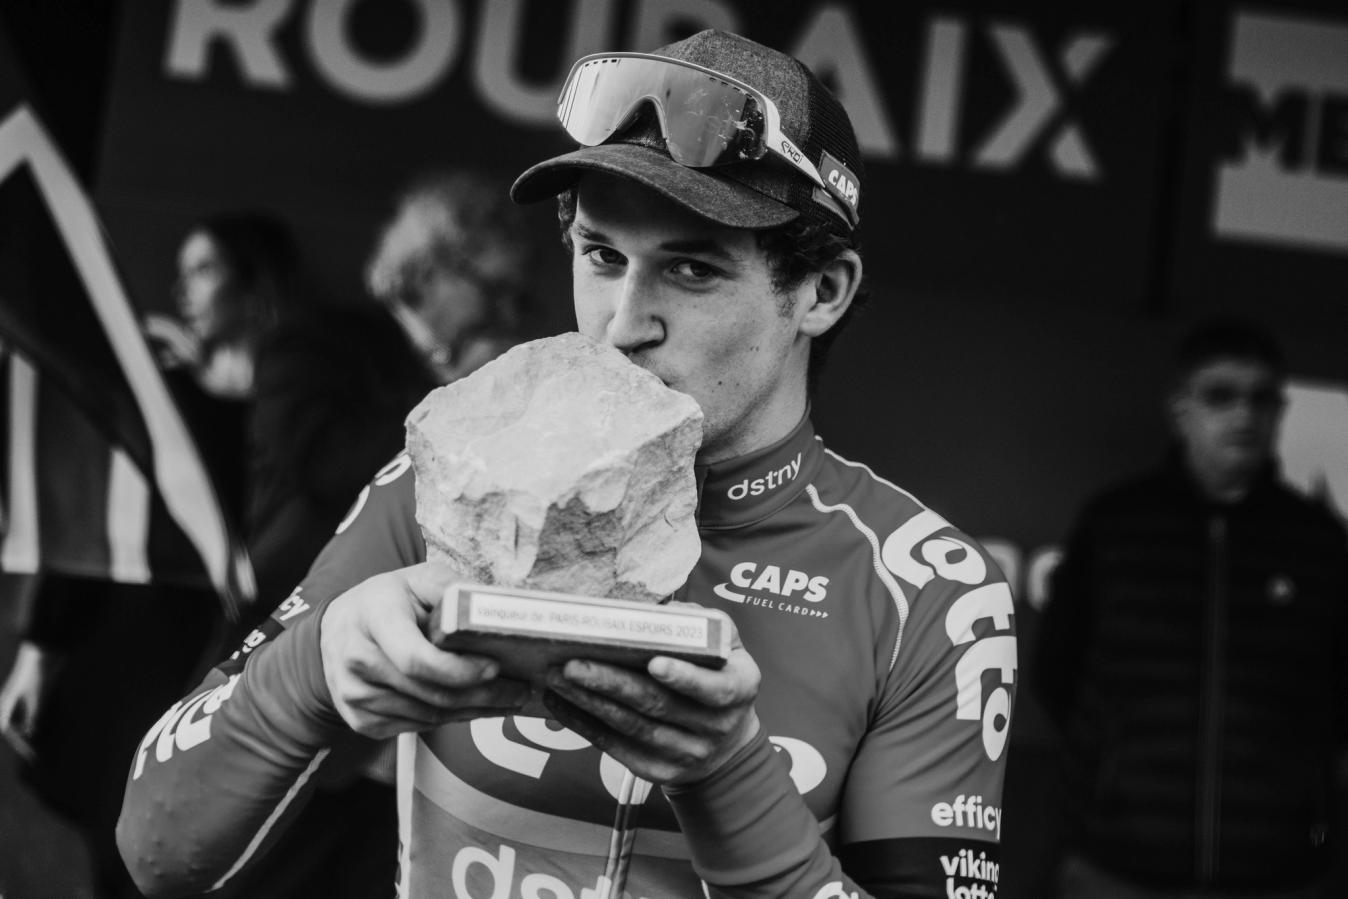 Tijl De Decker won Paris-Roubaix Espoirs earlier this season